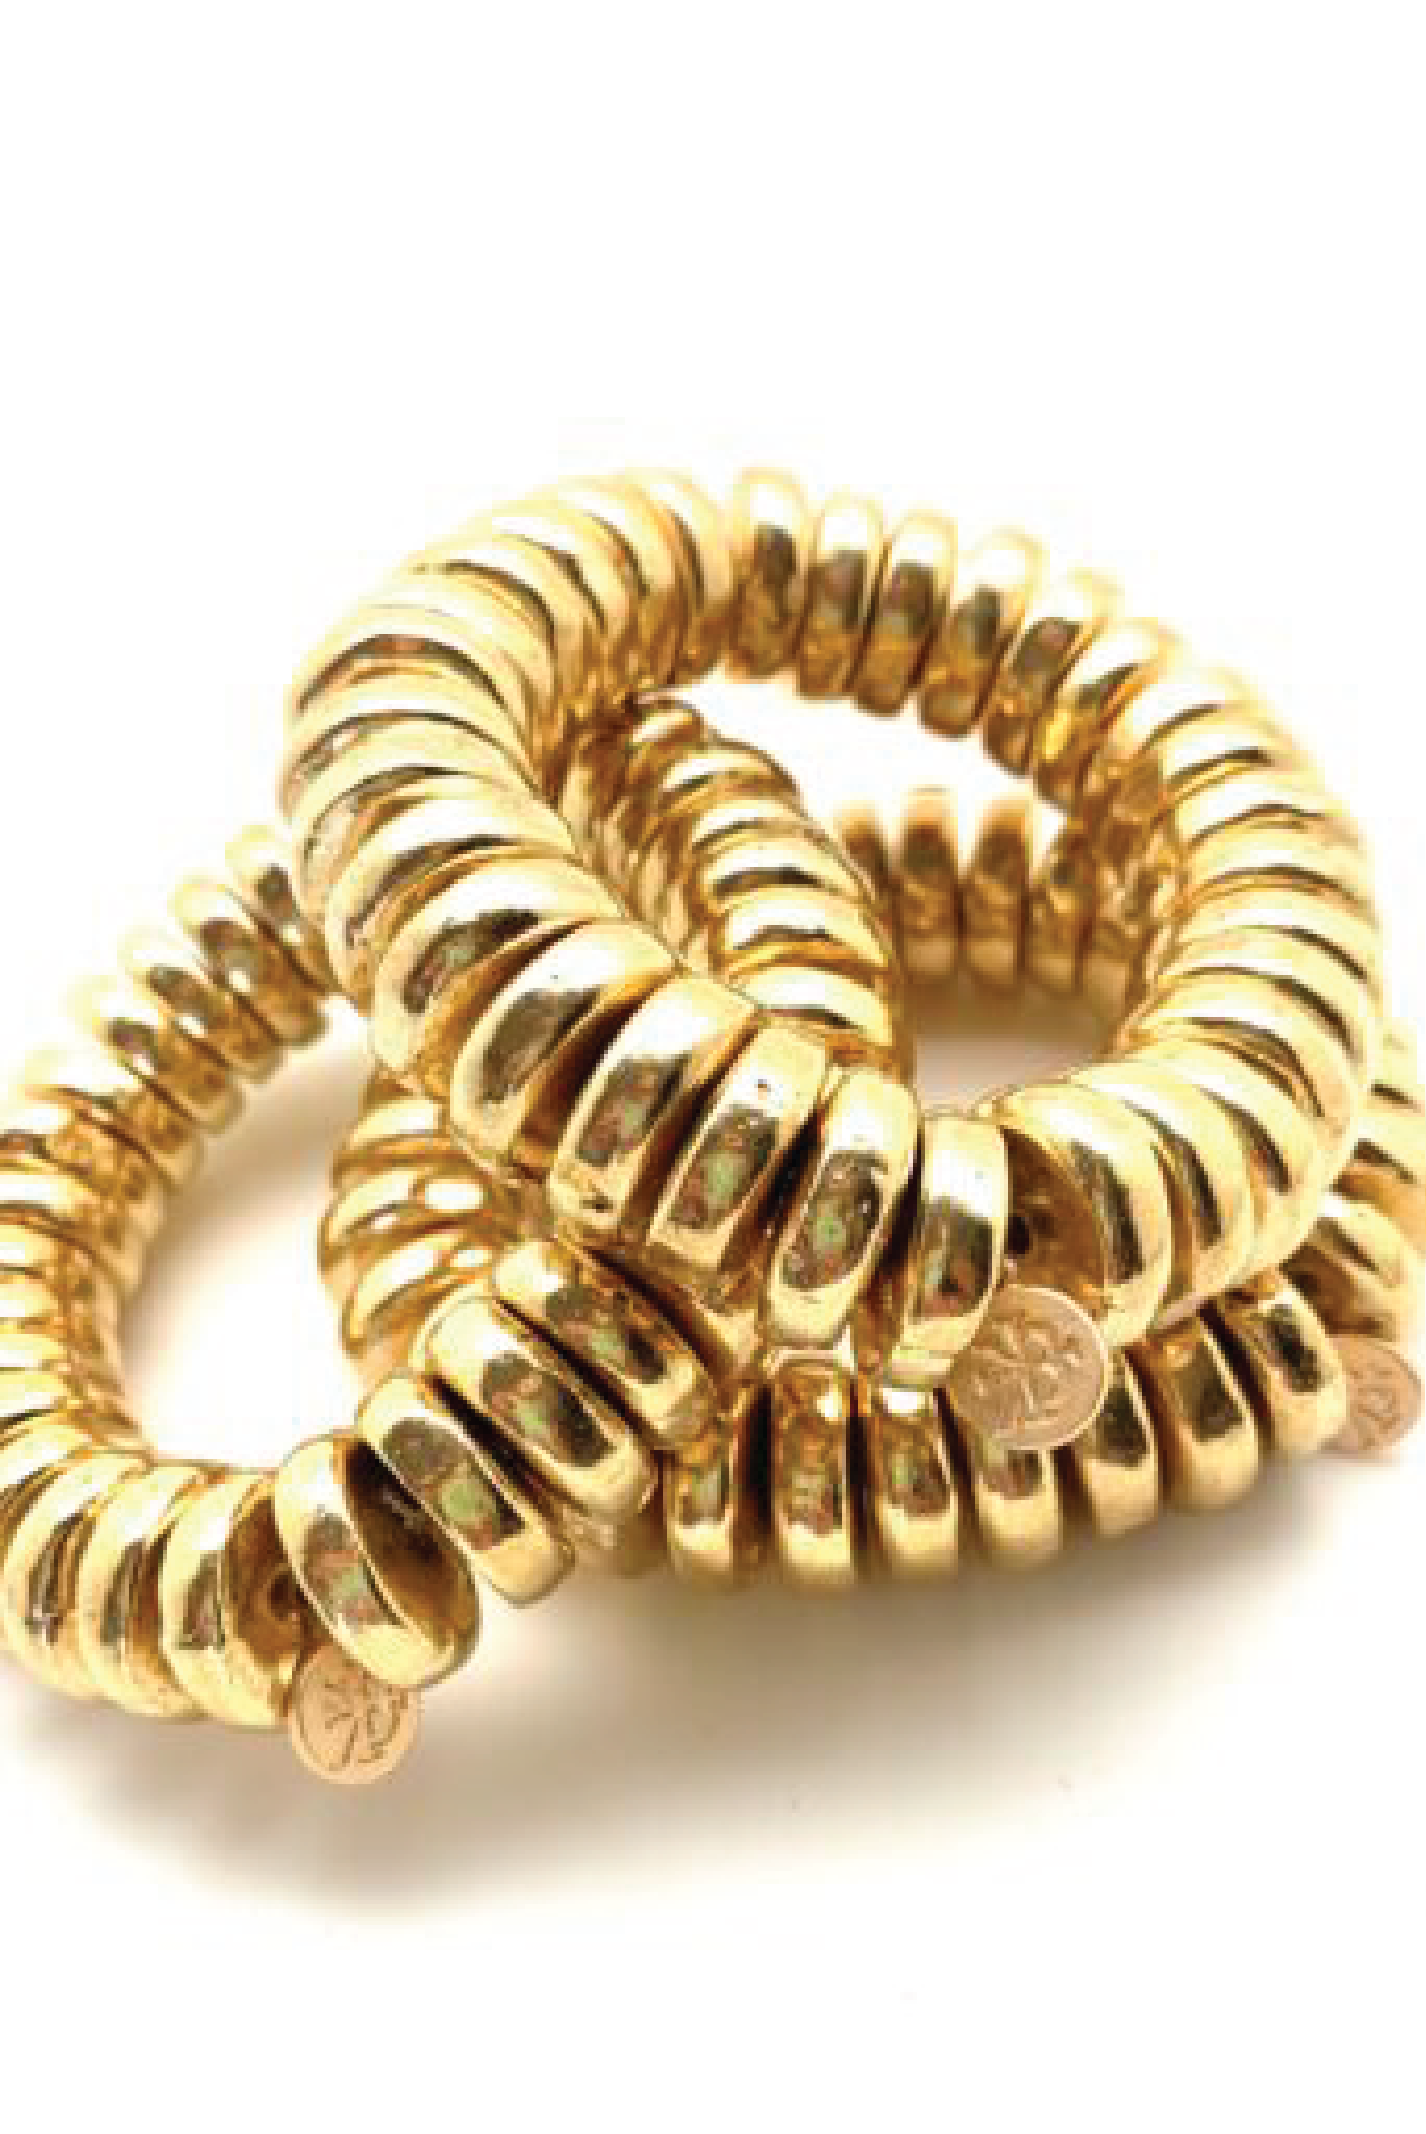 Vintage Rolled Gold Floral Adjustable Childs Bangle Bracelet 5 1/4